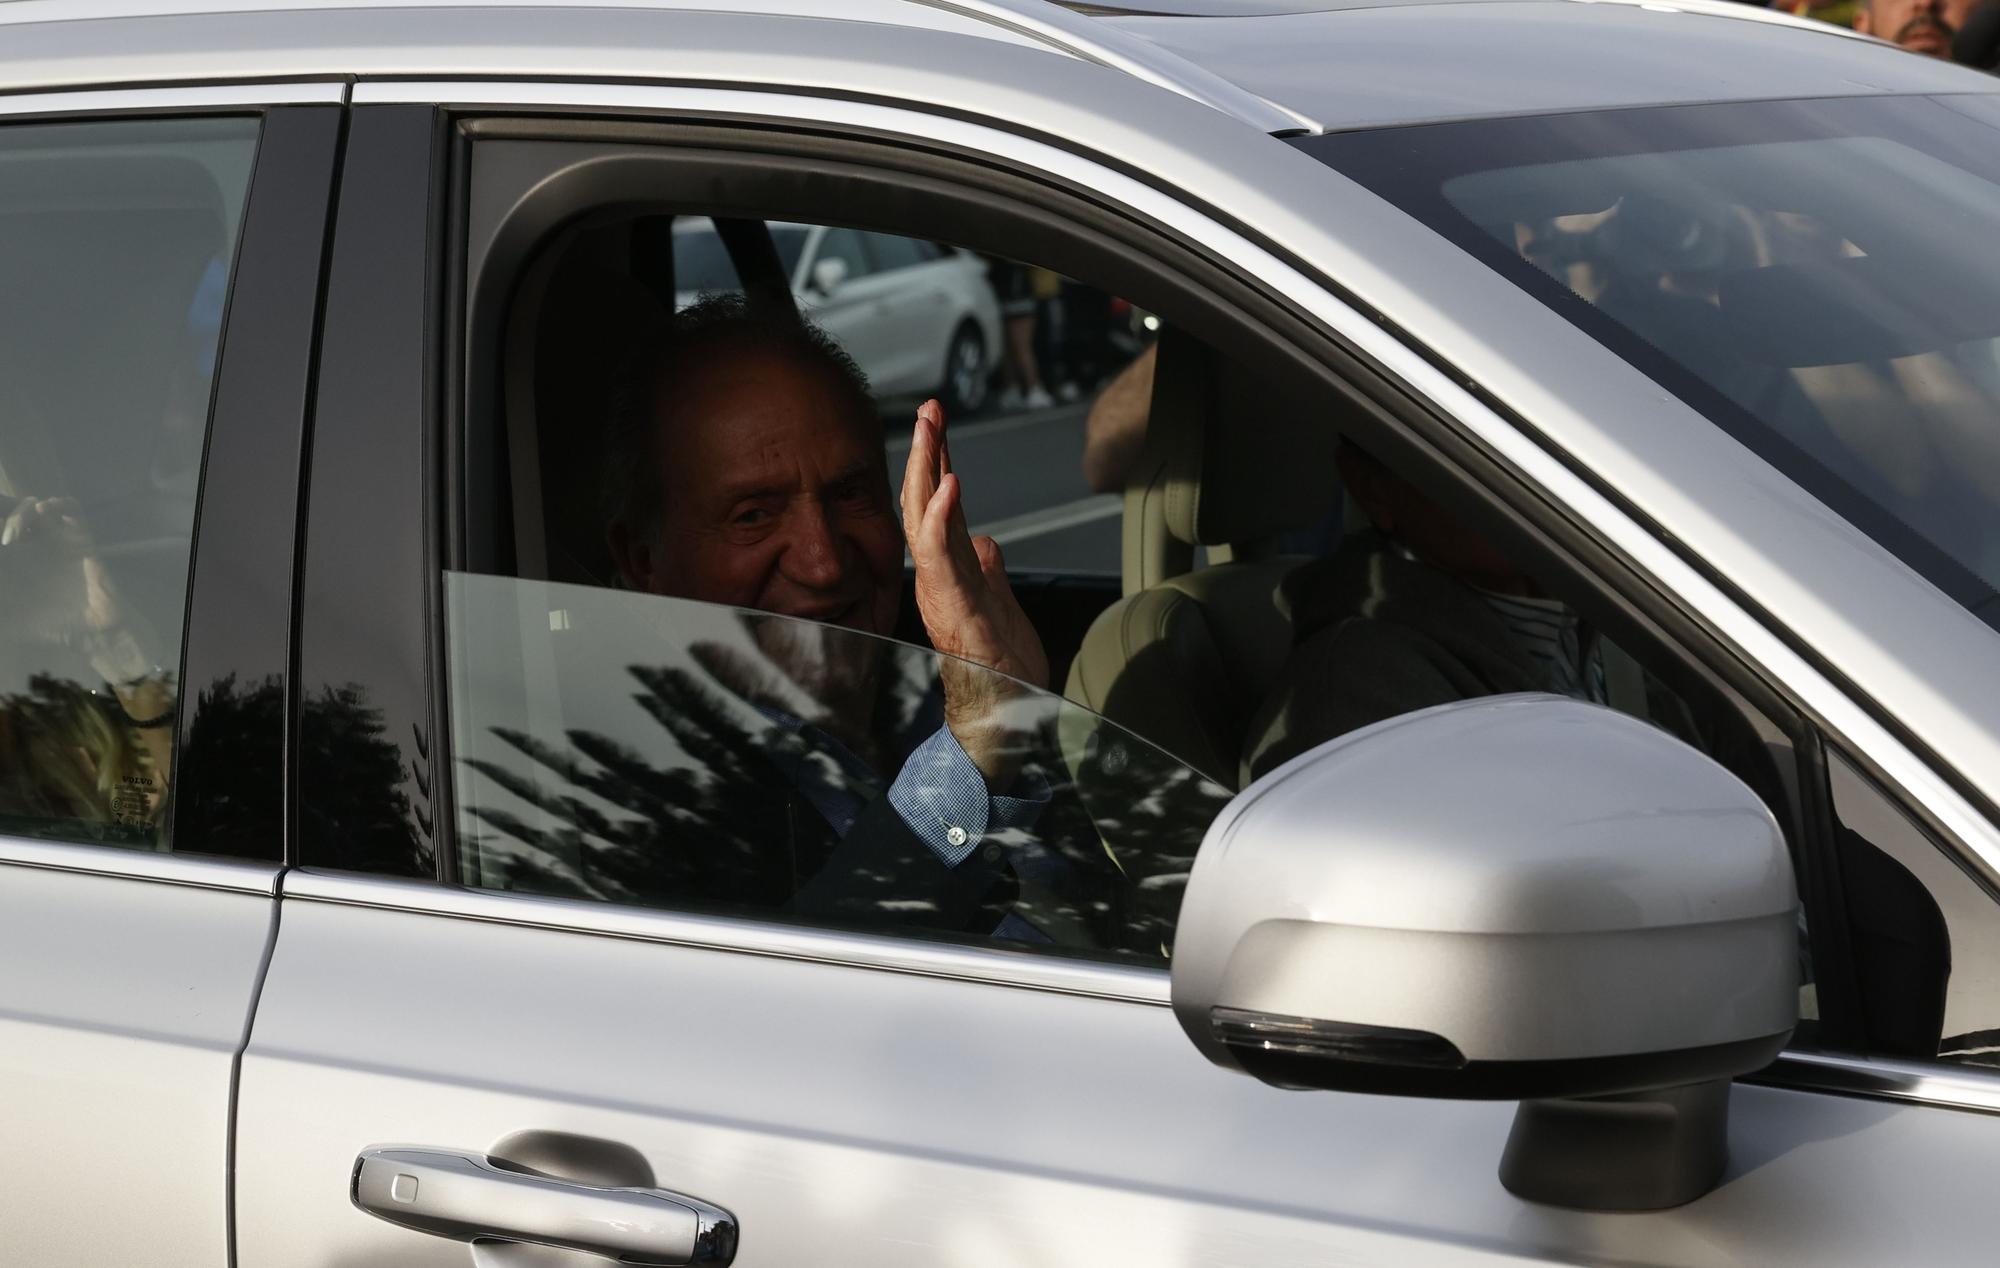 El rey Juan Carlos dice con un gesto que todo bien al llegar a casa de Campos